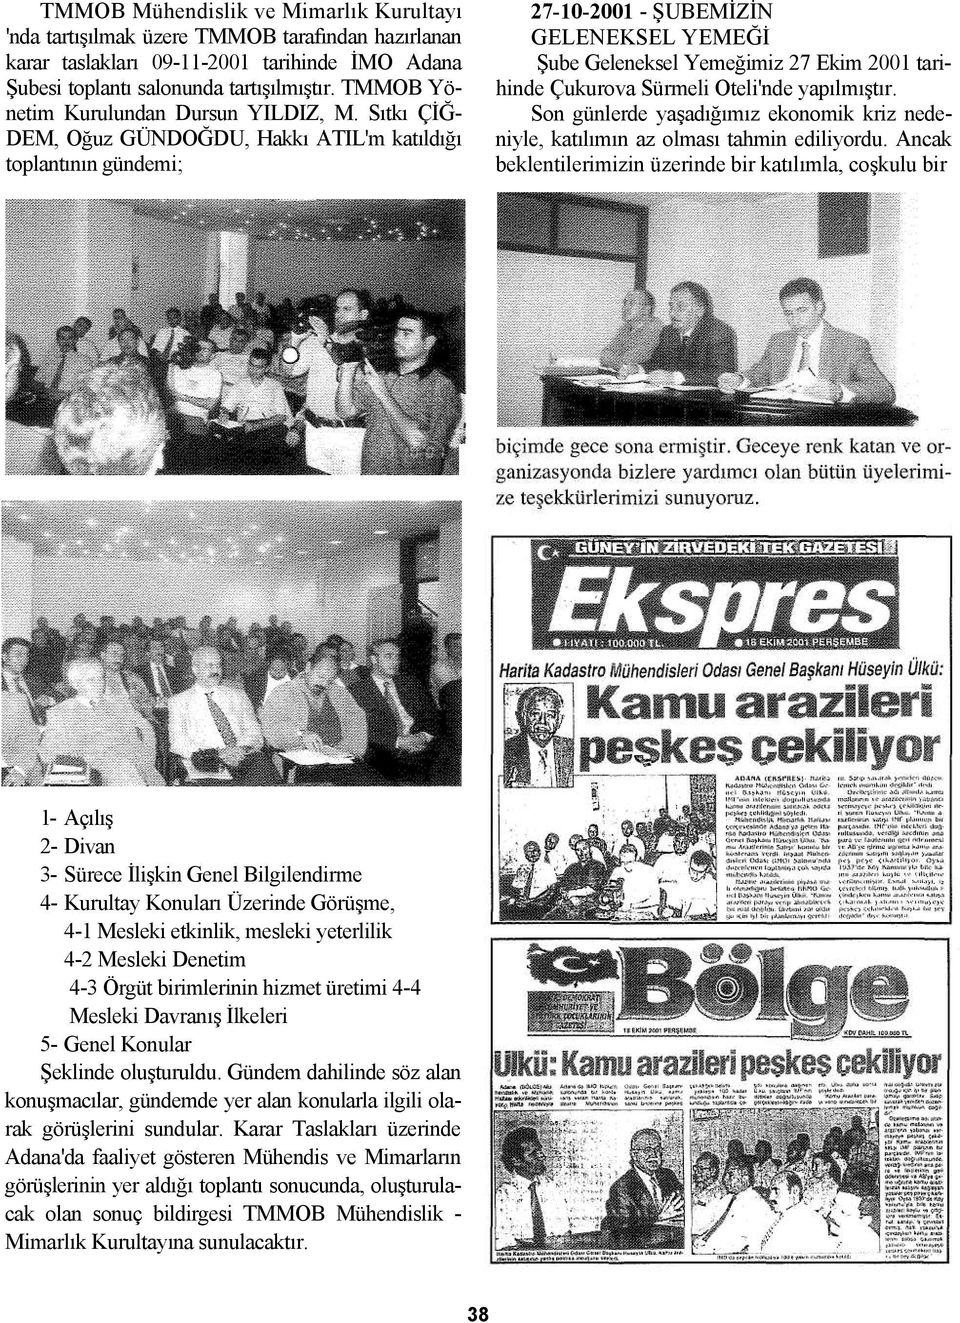 Sıtkı ÇİĞ- DEM, Oğuz GÜNDOĞDU, Hakkı ATIL'm katıldığı toplantının gündemi; 27-10-2001 - ŞUBEMİZİN GELENEKSEL YEMEĞİ Şube Geleneksel Yemeğimiz 27 Ekim 2001 tarihinde Çukurova Sürmeli Oteli'nde